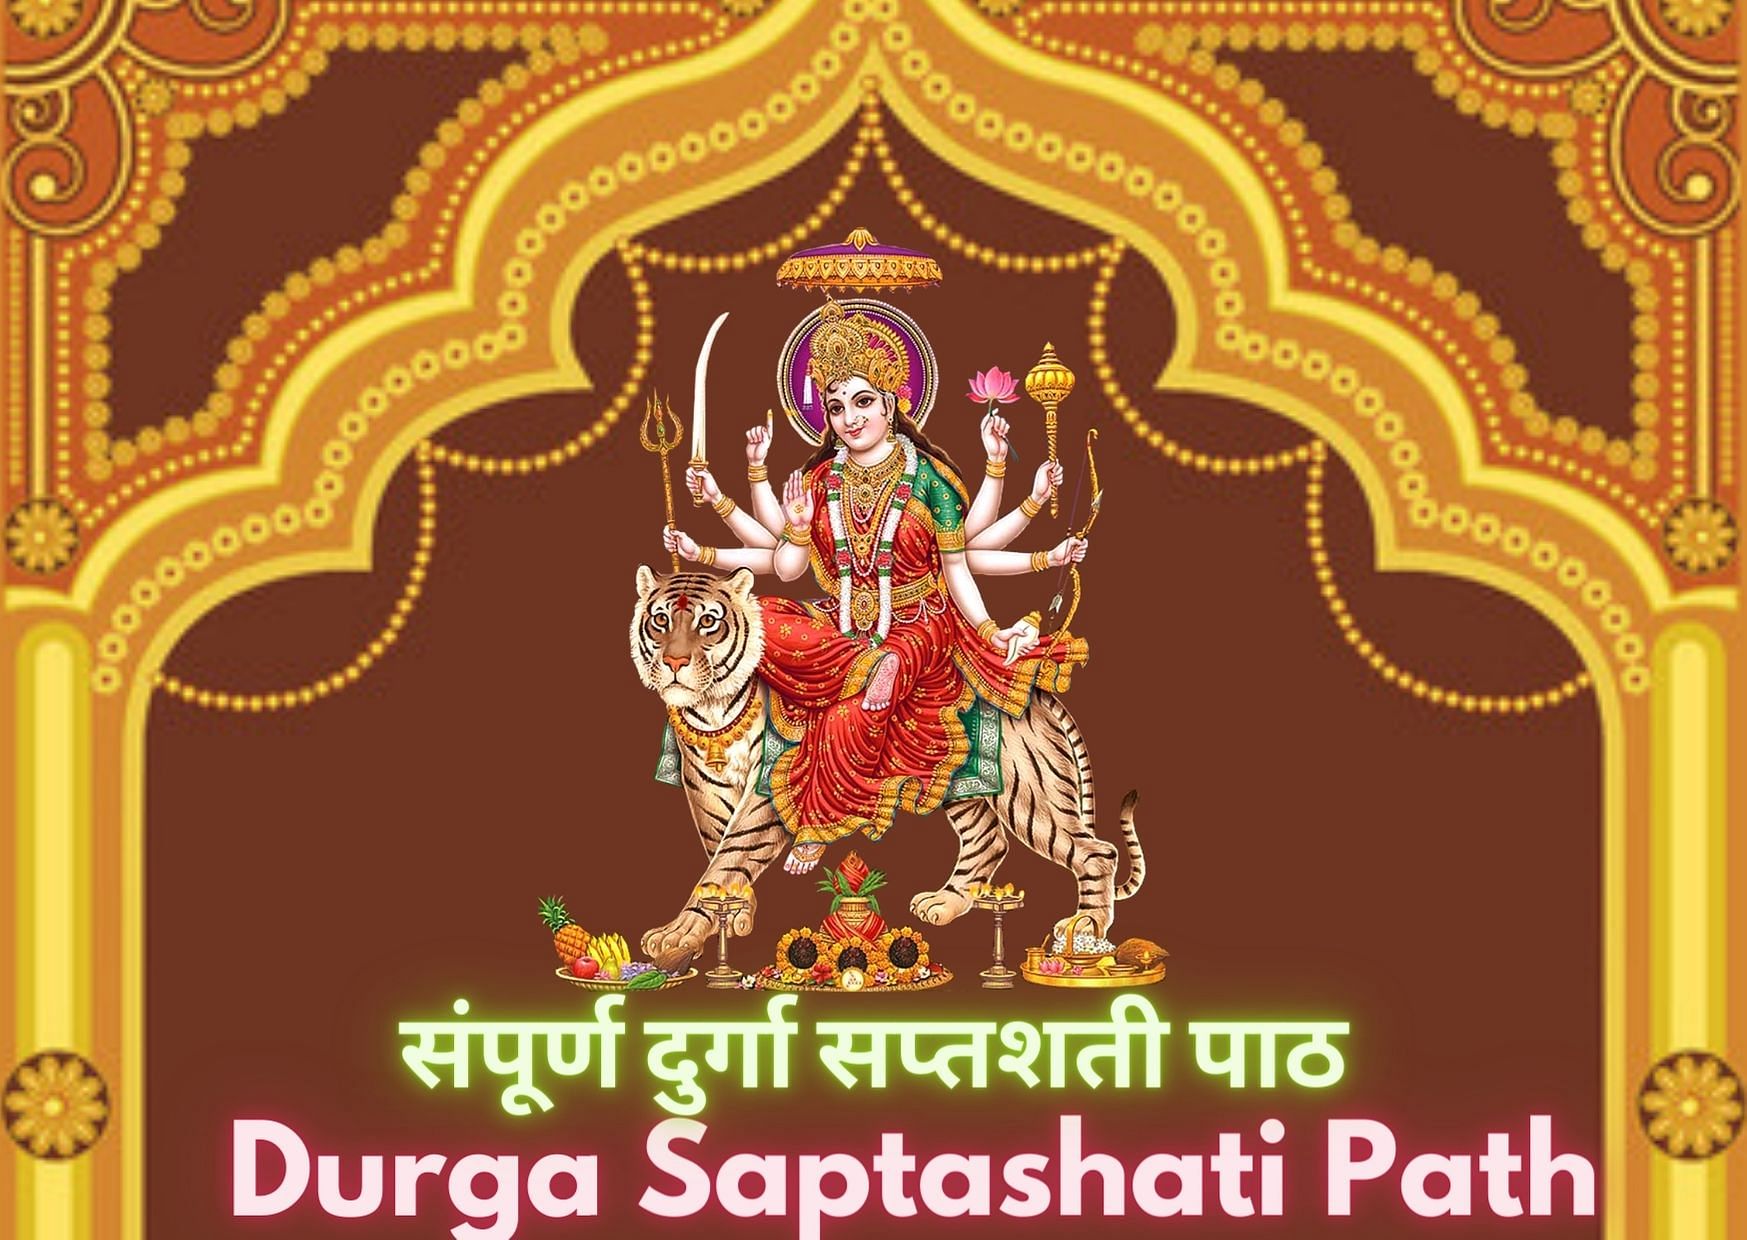 Durga Saptashati path